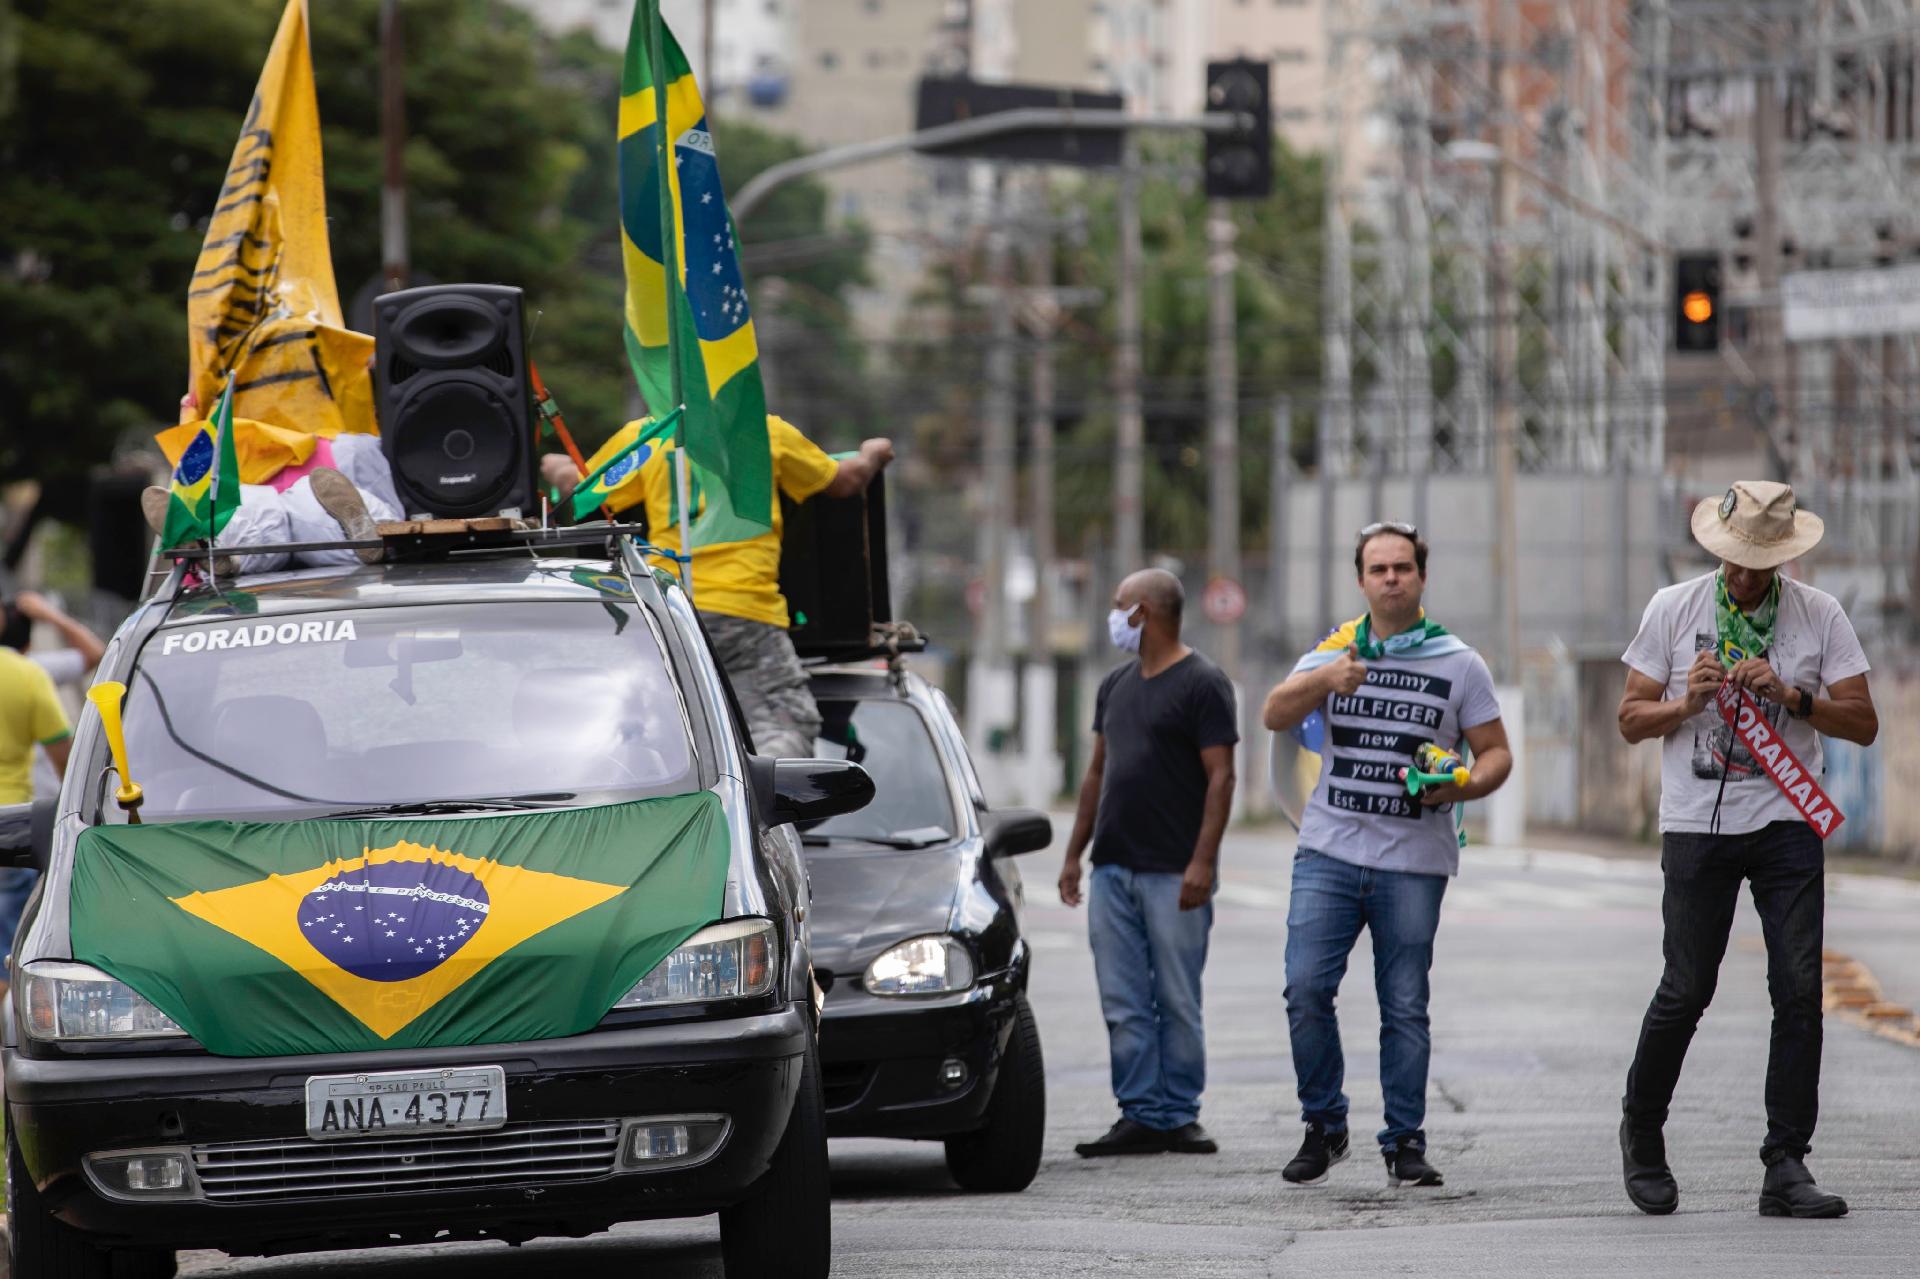 Carreatas contra isolamento social em SP, Rio e Brasília têm ...